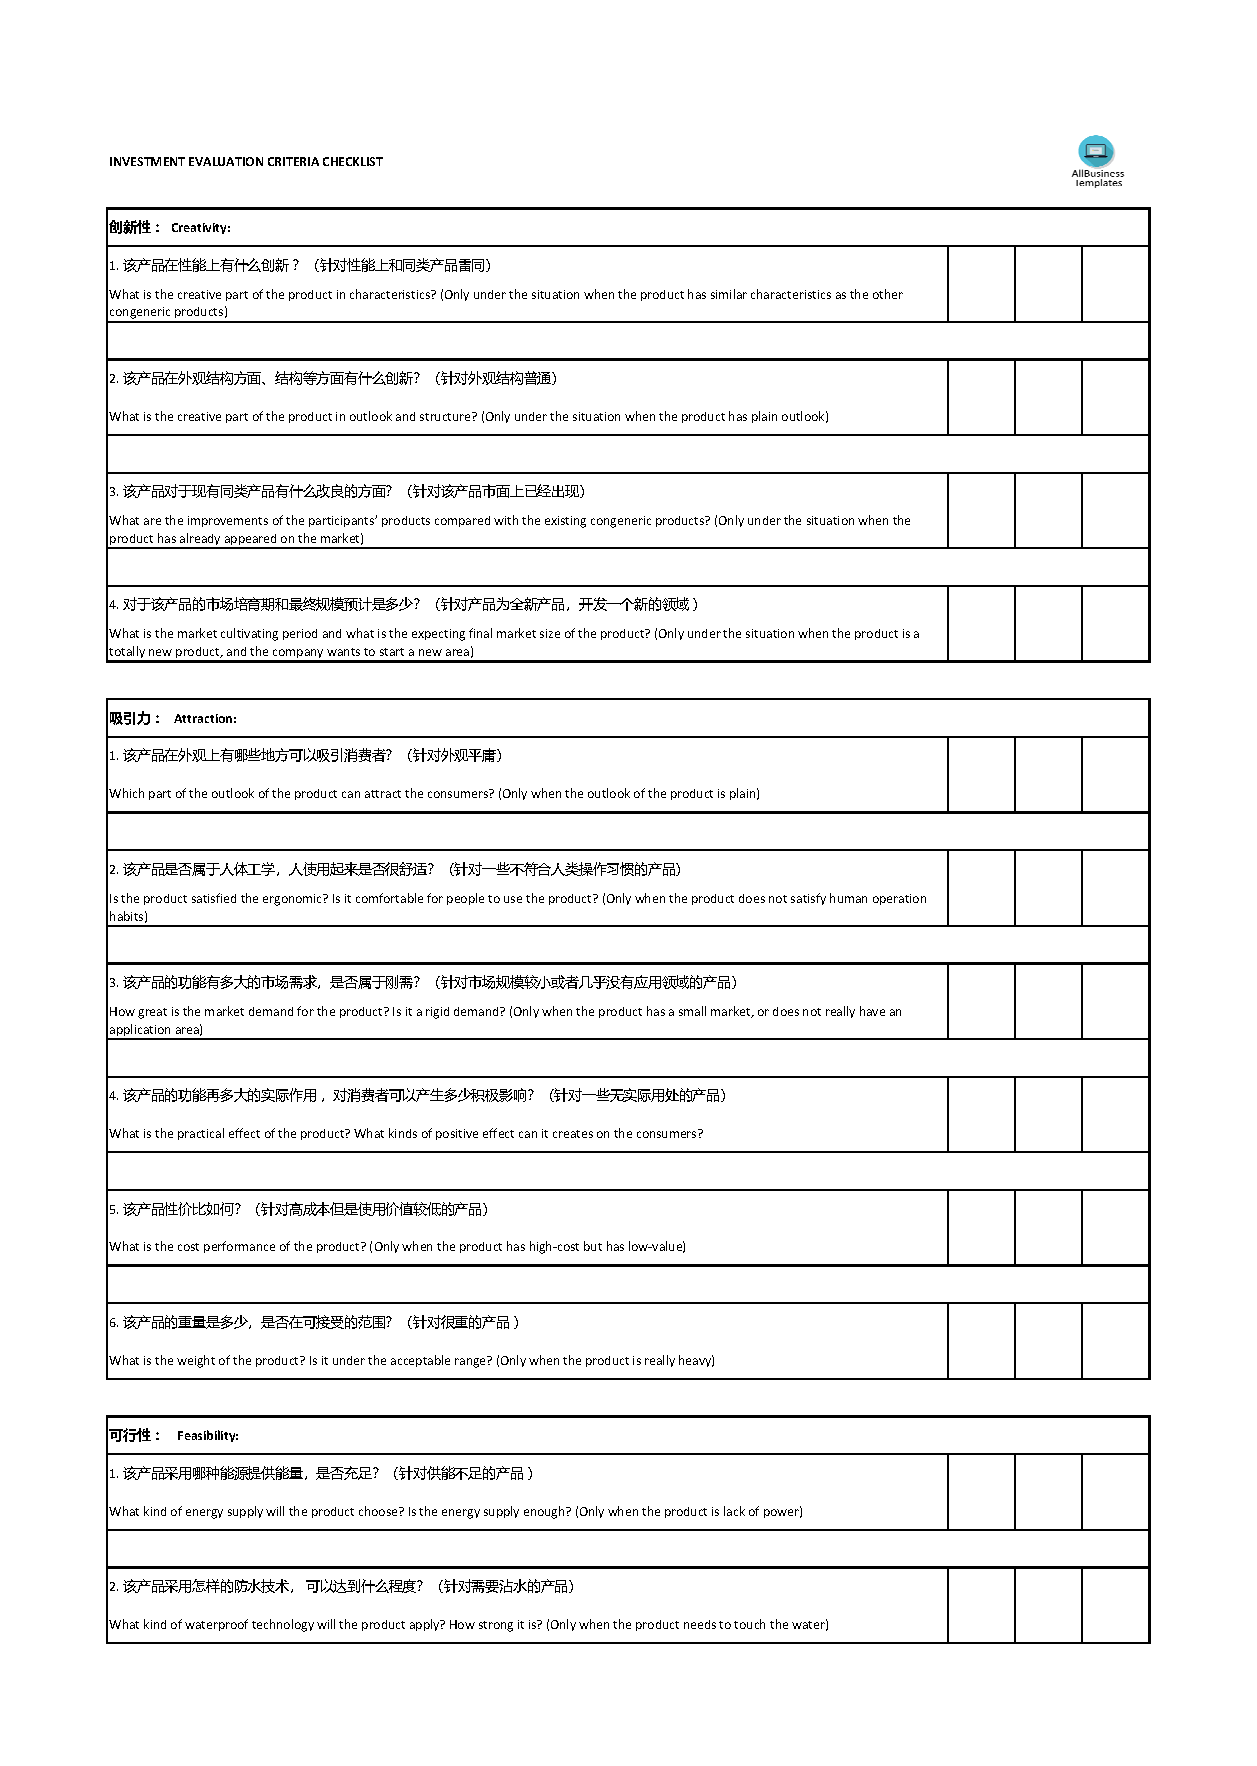 investment evaluation criteria checklist plantilla imagen principal